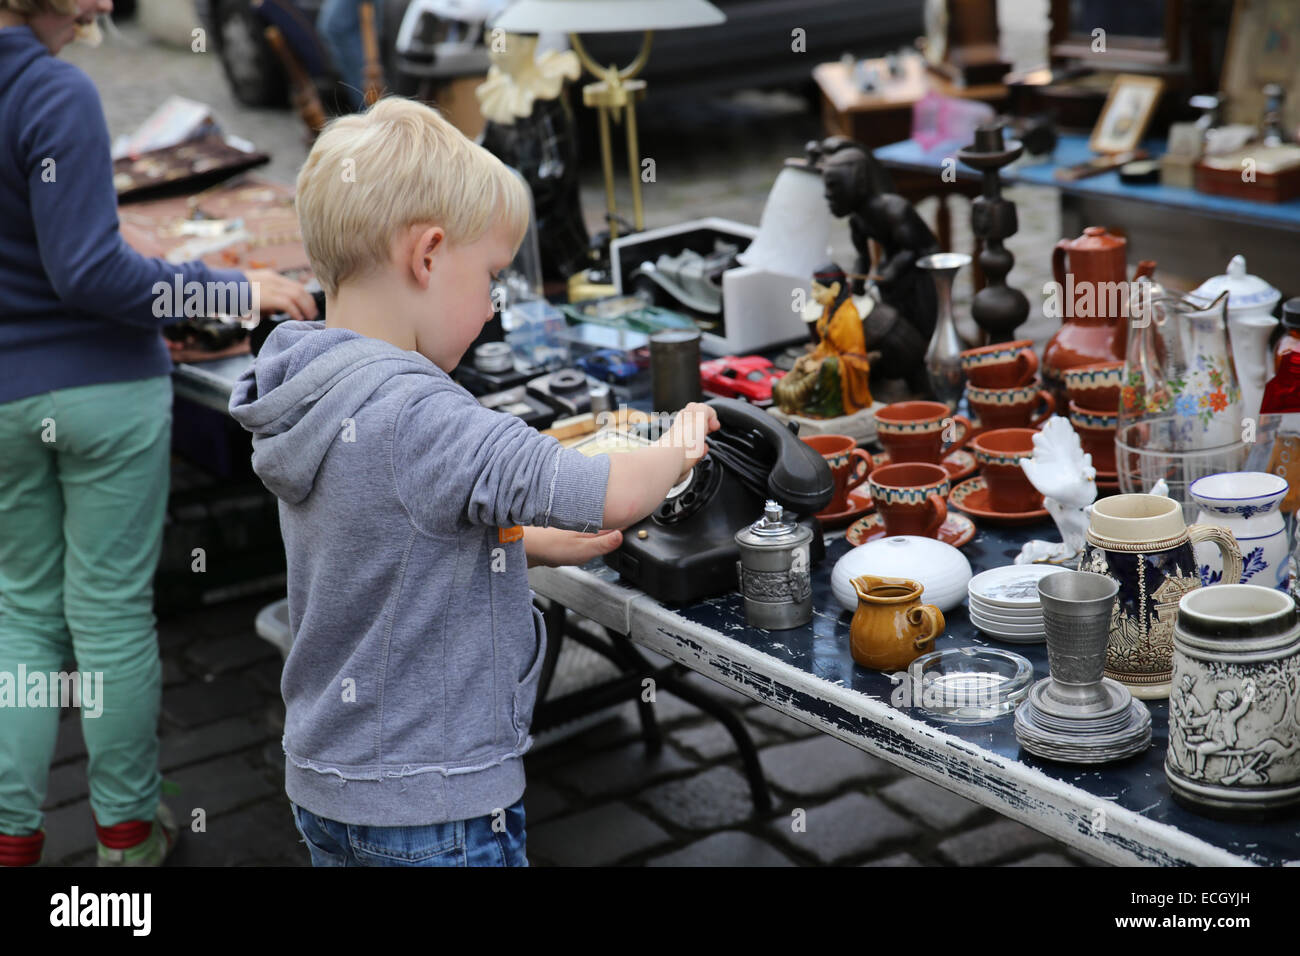 Jeune garçon téléphone antique marché aux puces de Berlin Allemagne europe Banque D'Images